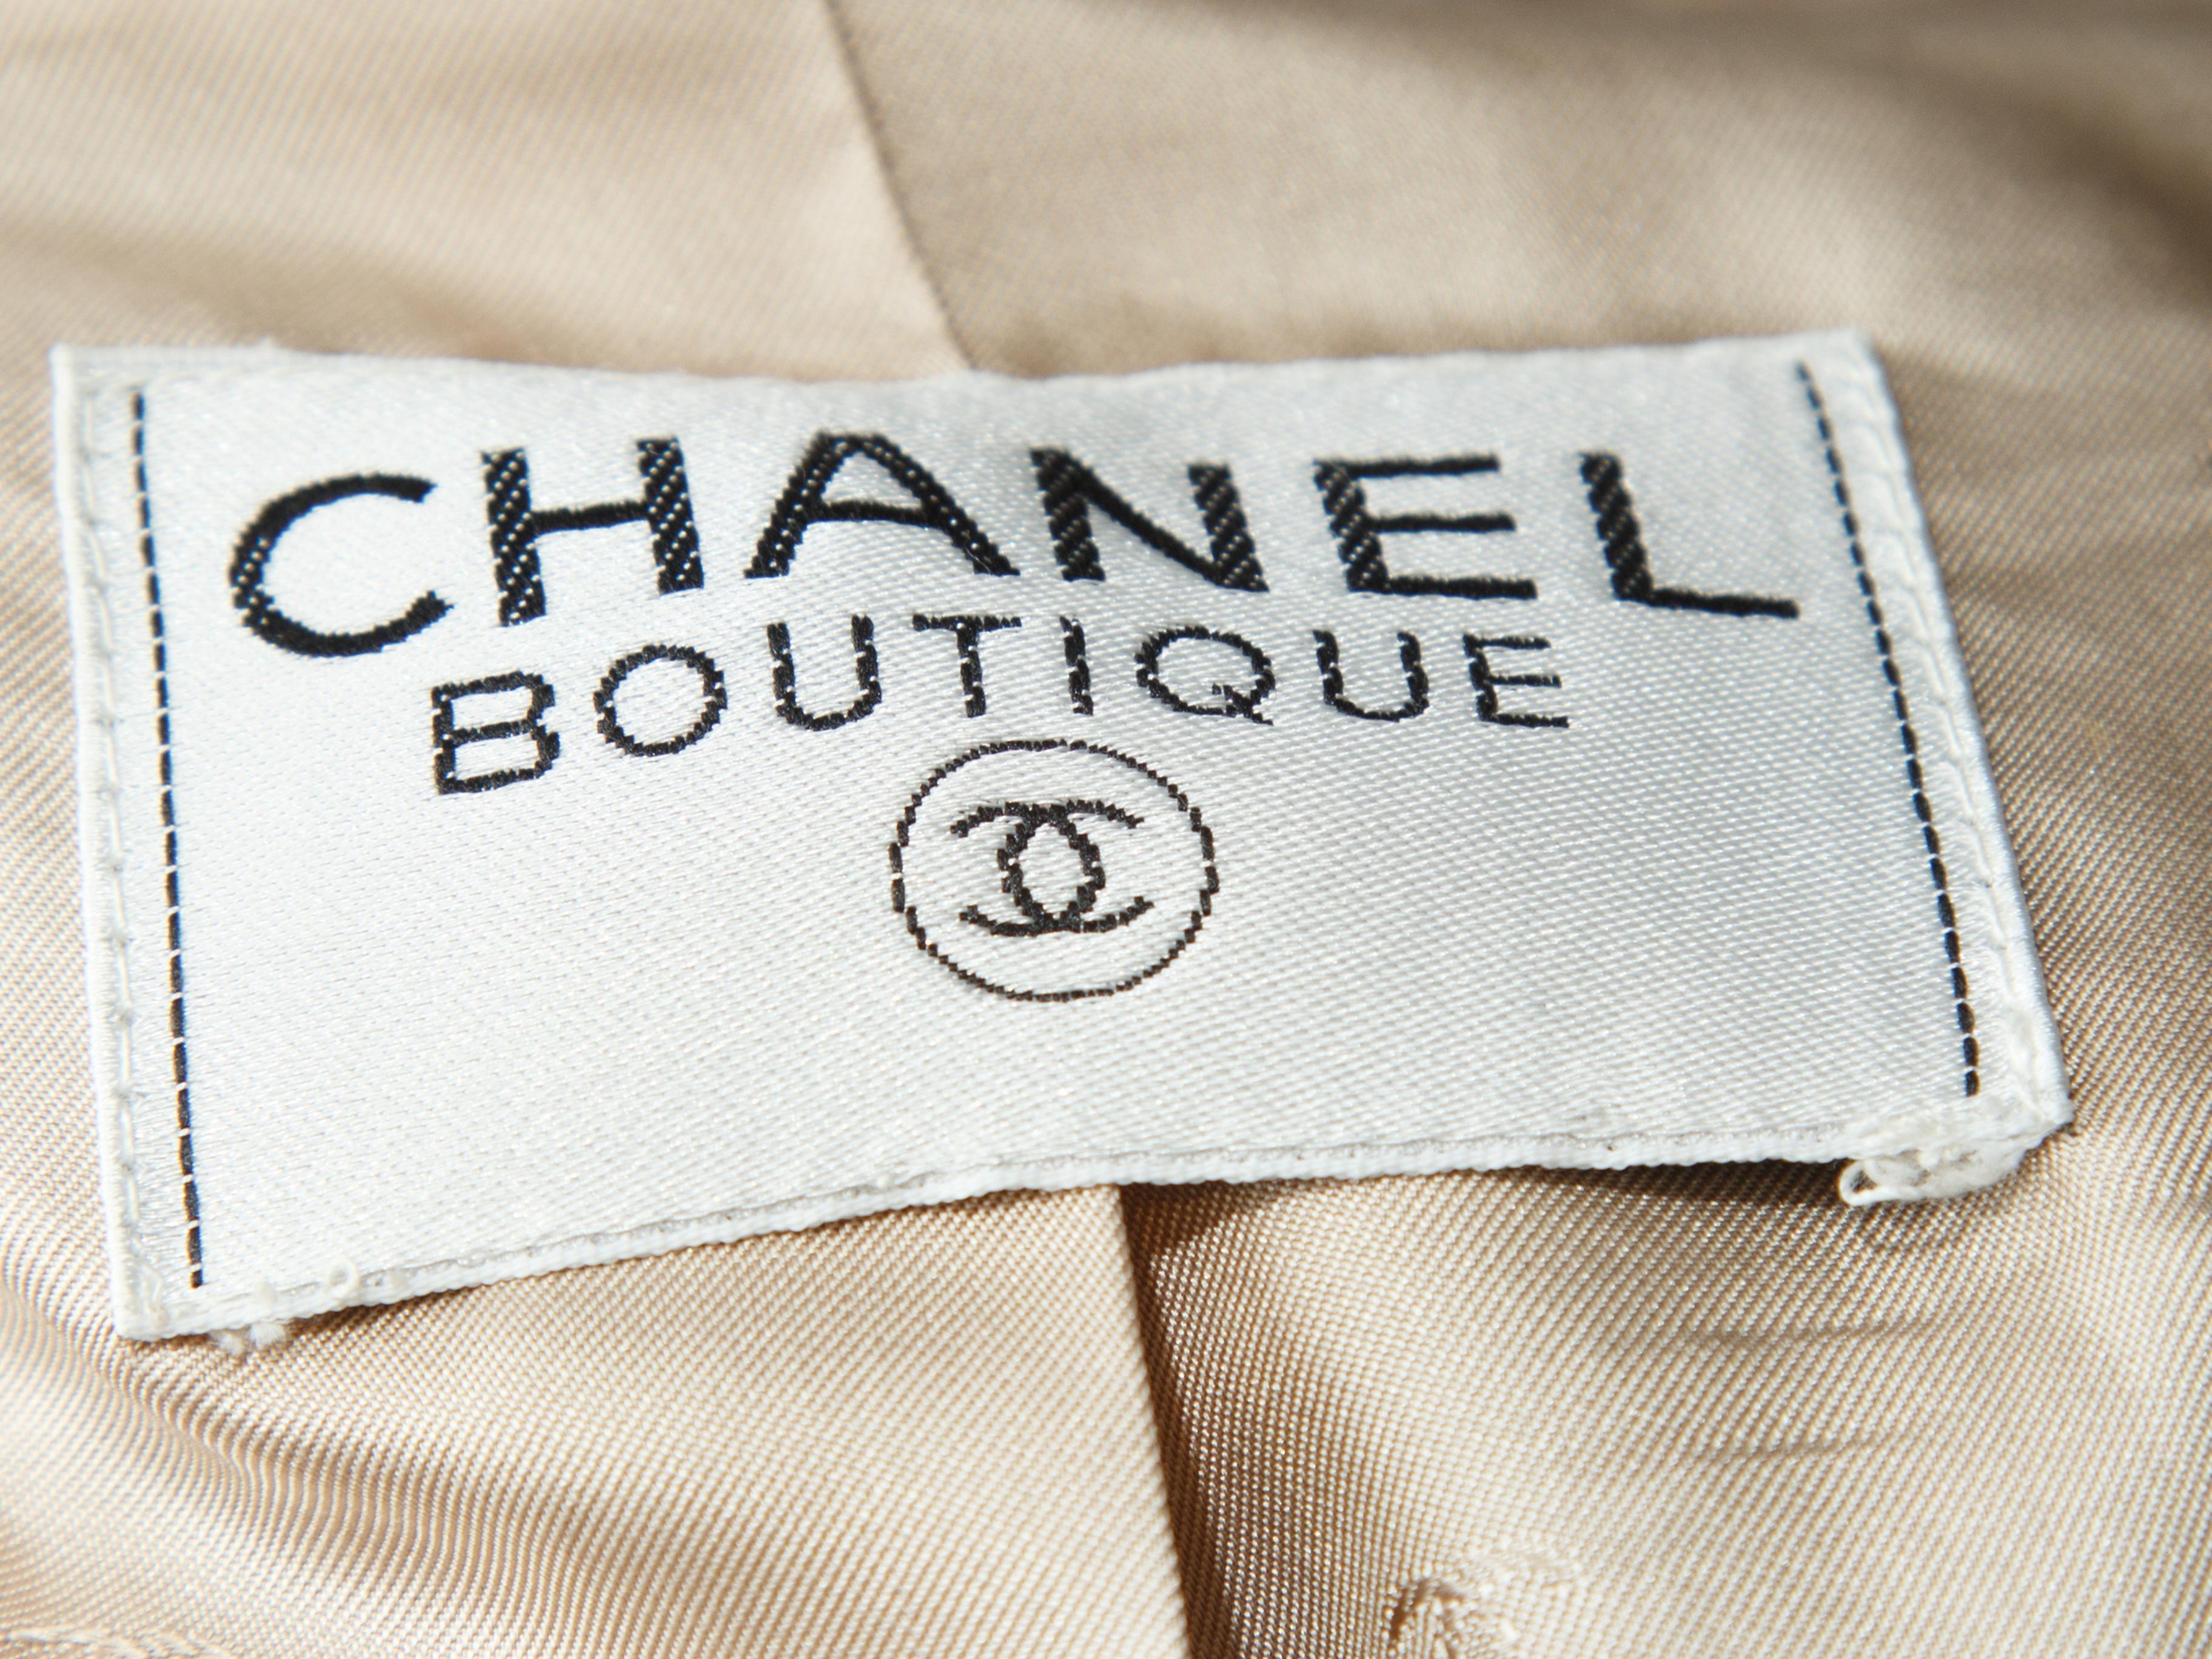 Women's Chanel Boutique Light Blue & Multicolor Plaid Skirt Suit